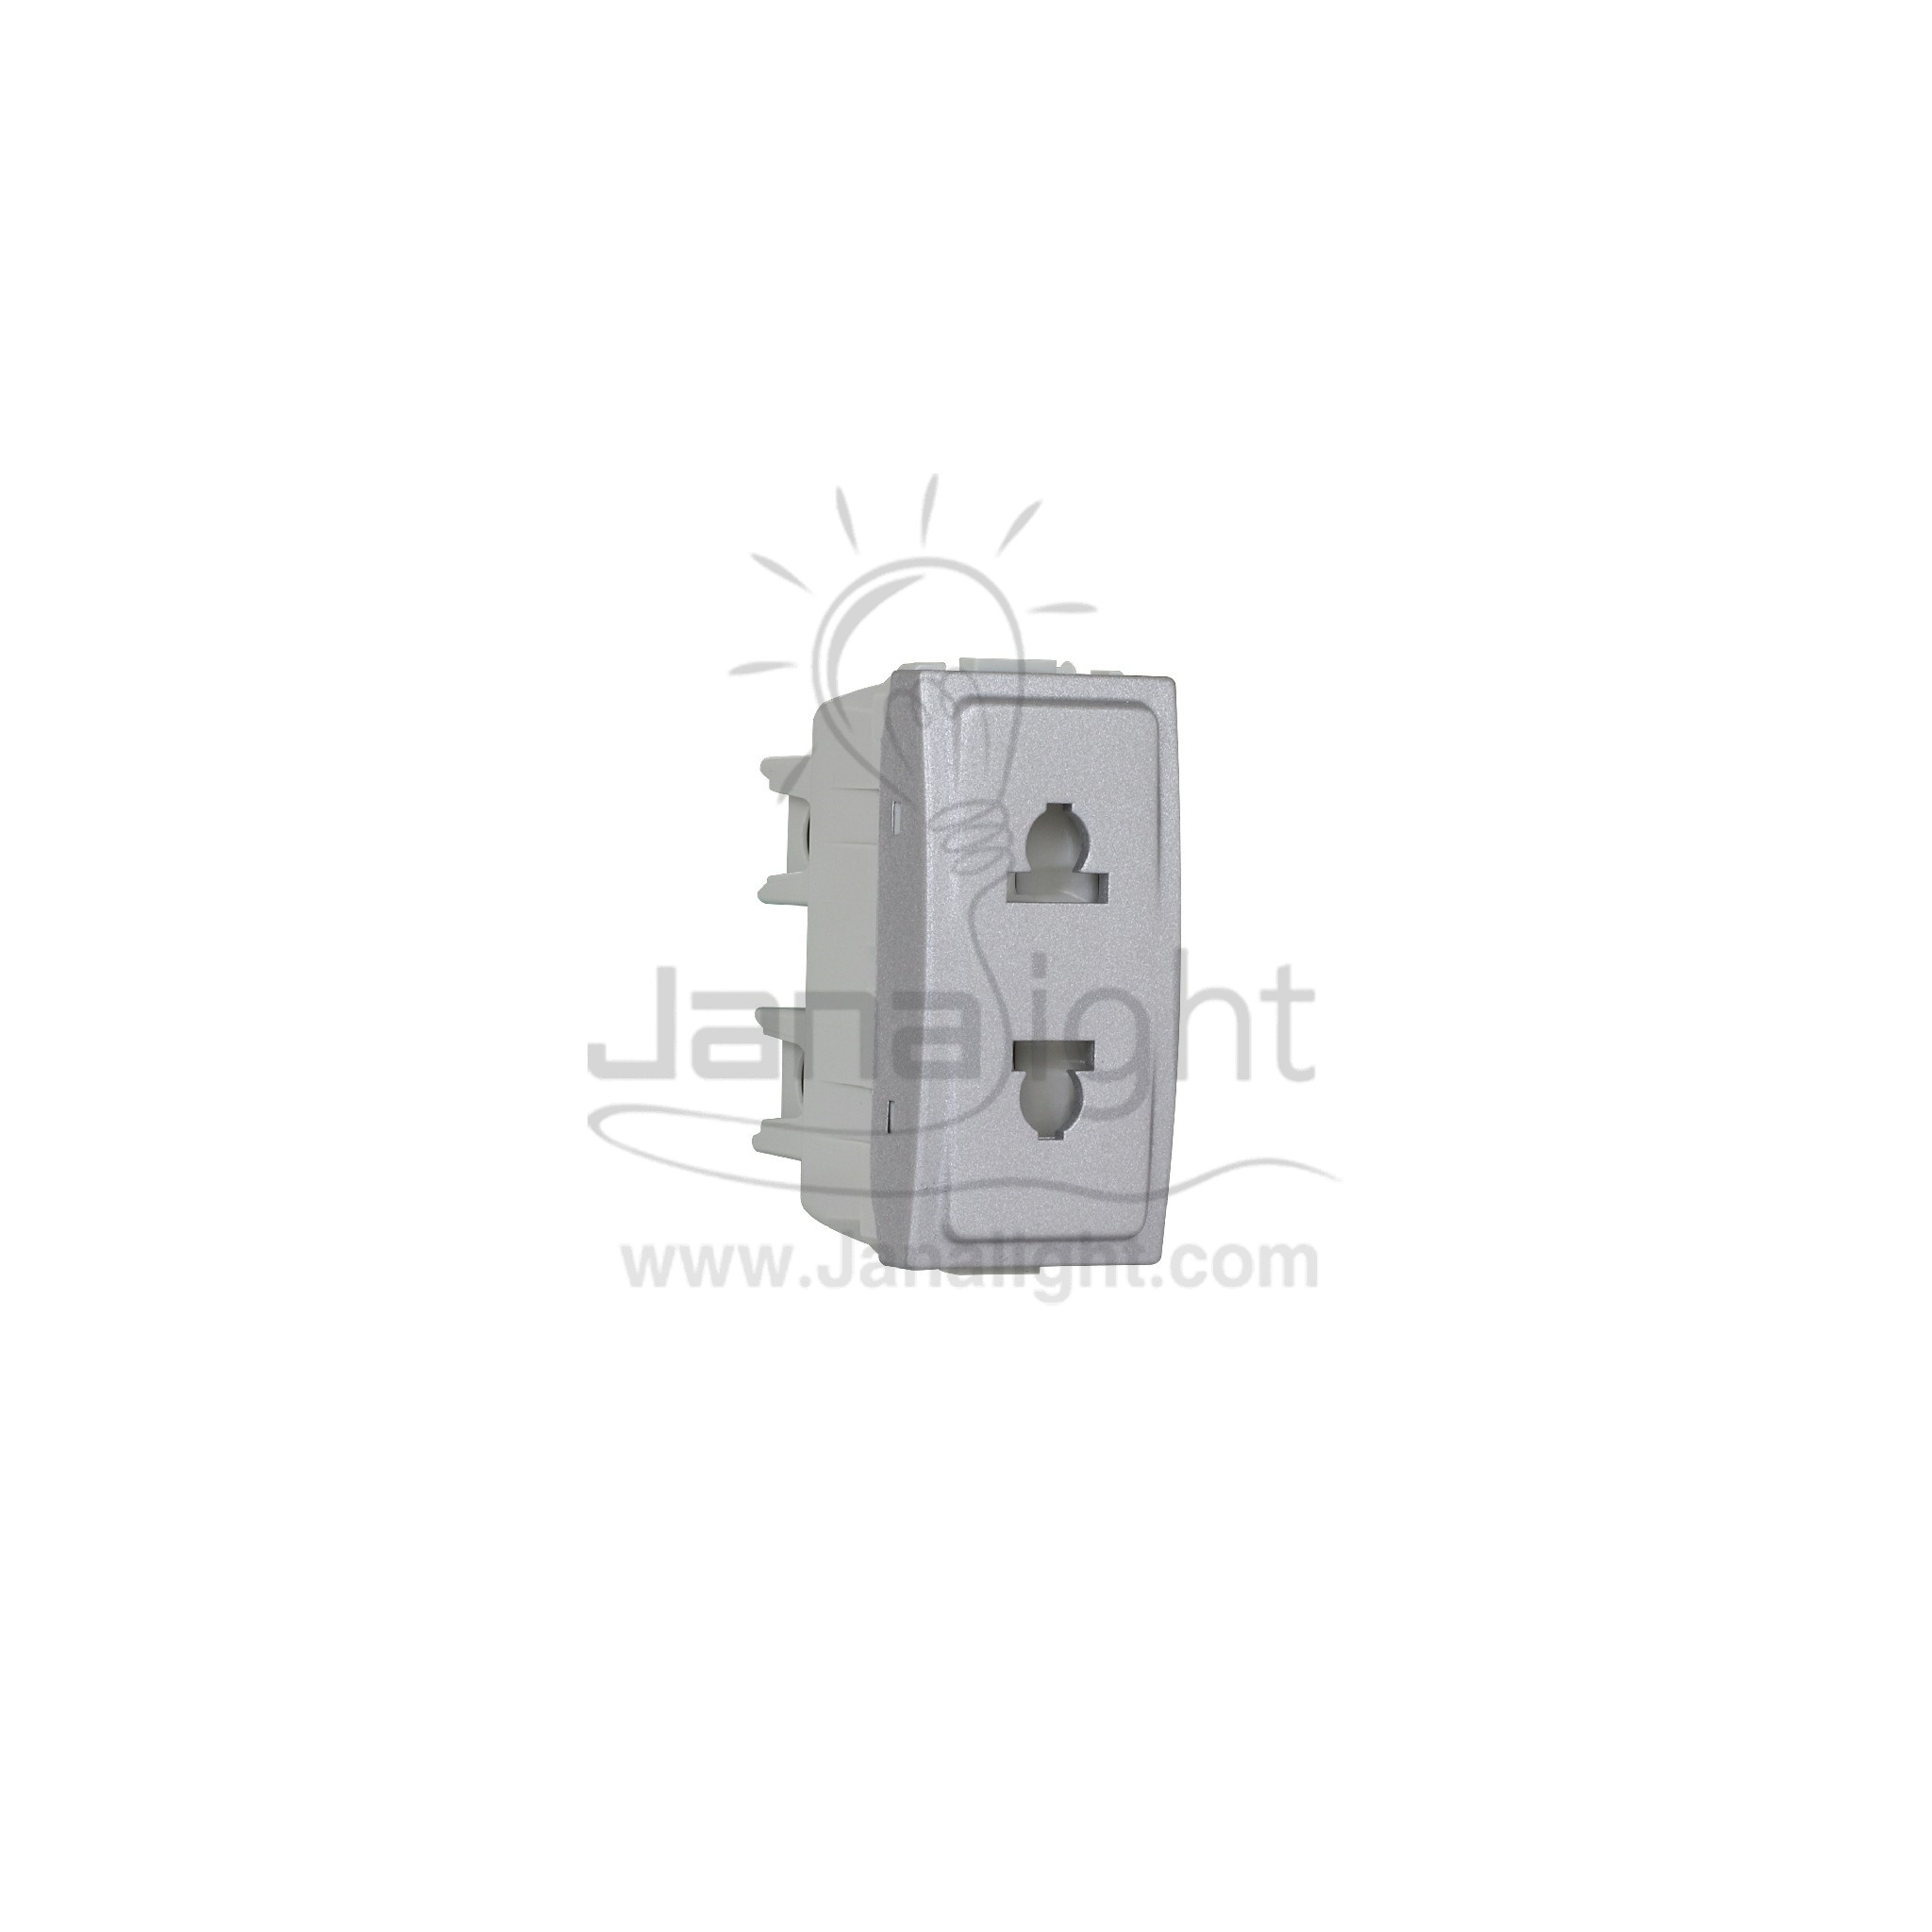 بريزة امريكي بغطاء حماية فضي شنايدر Schneider Mgu3.021.30 American Plug Socket